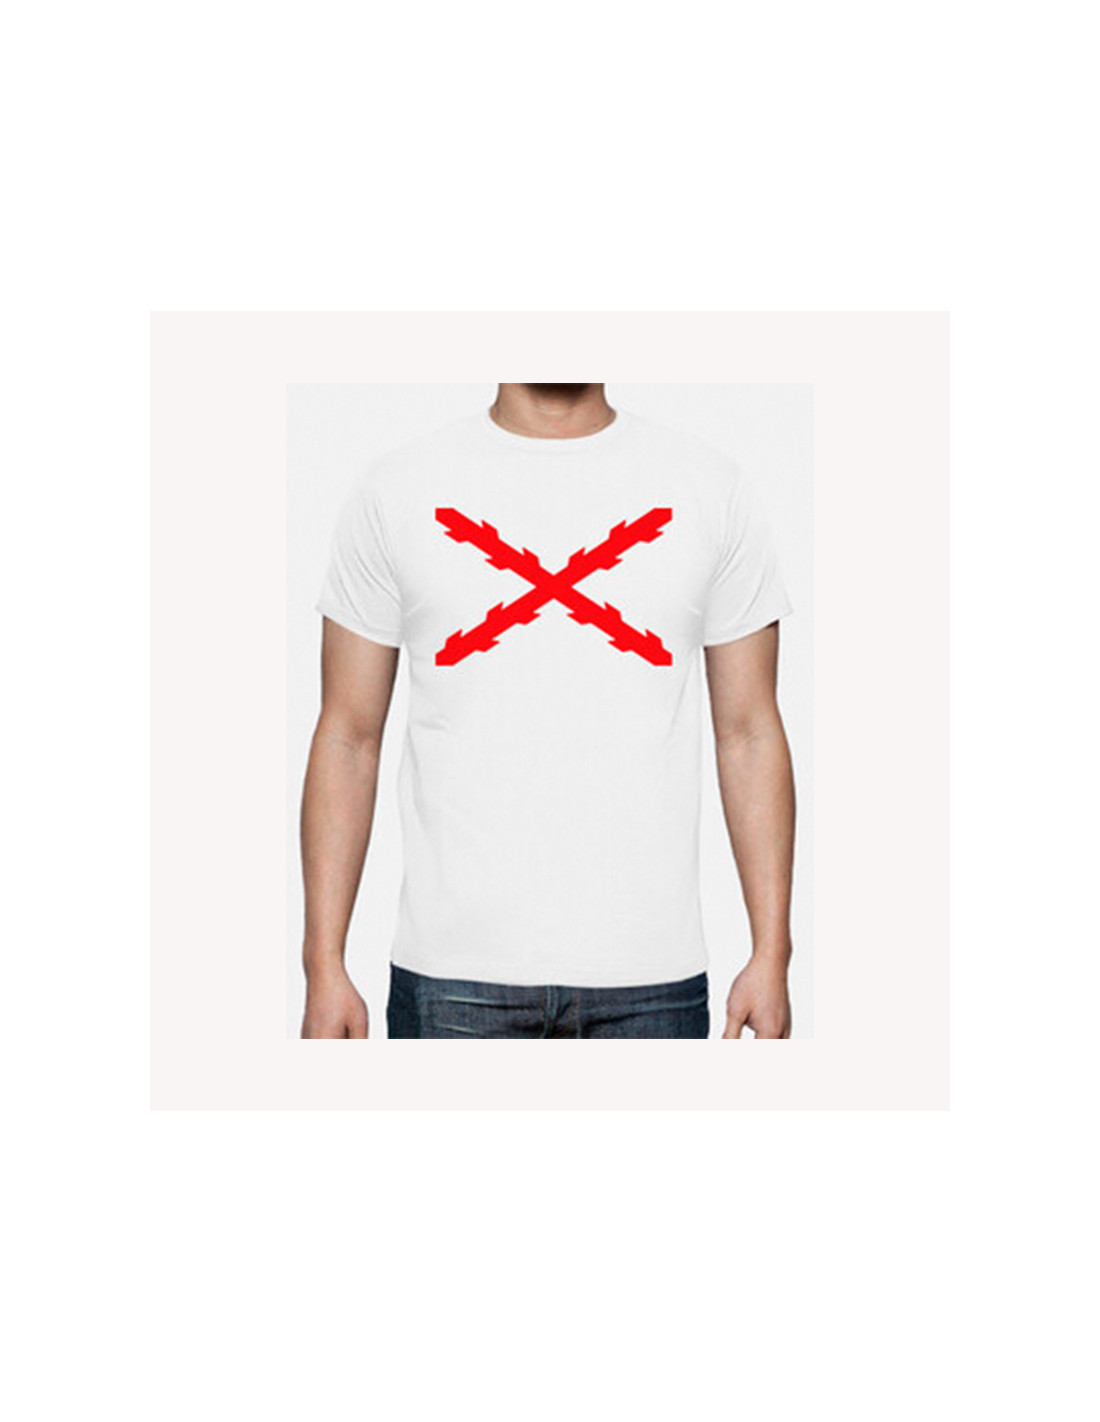 observación Especialmente Persona a cargo Camiseta Cruz de borgoña Talla S Color Blanco